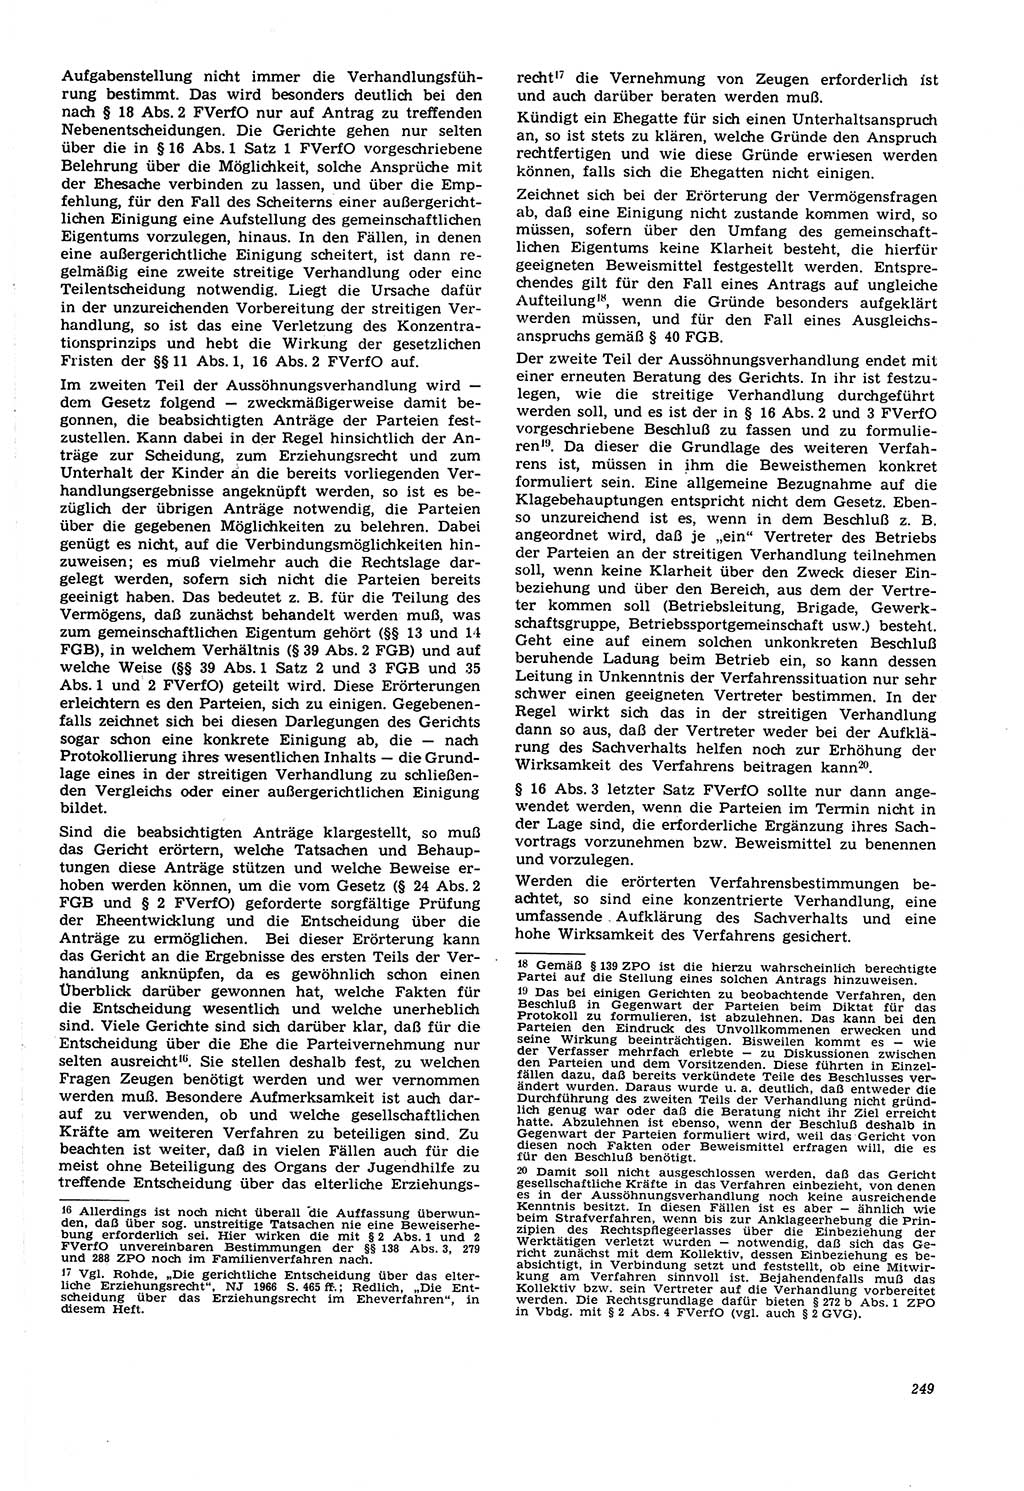 Neue Justiz (NJ), Zeitschrift für Recht und Rechtswissenschaft [Deutsche Demokratische Republik (DDR)], 21. Jahrgang 1967, Seite 249 (NJ DDR 1967, S. 249)